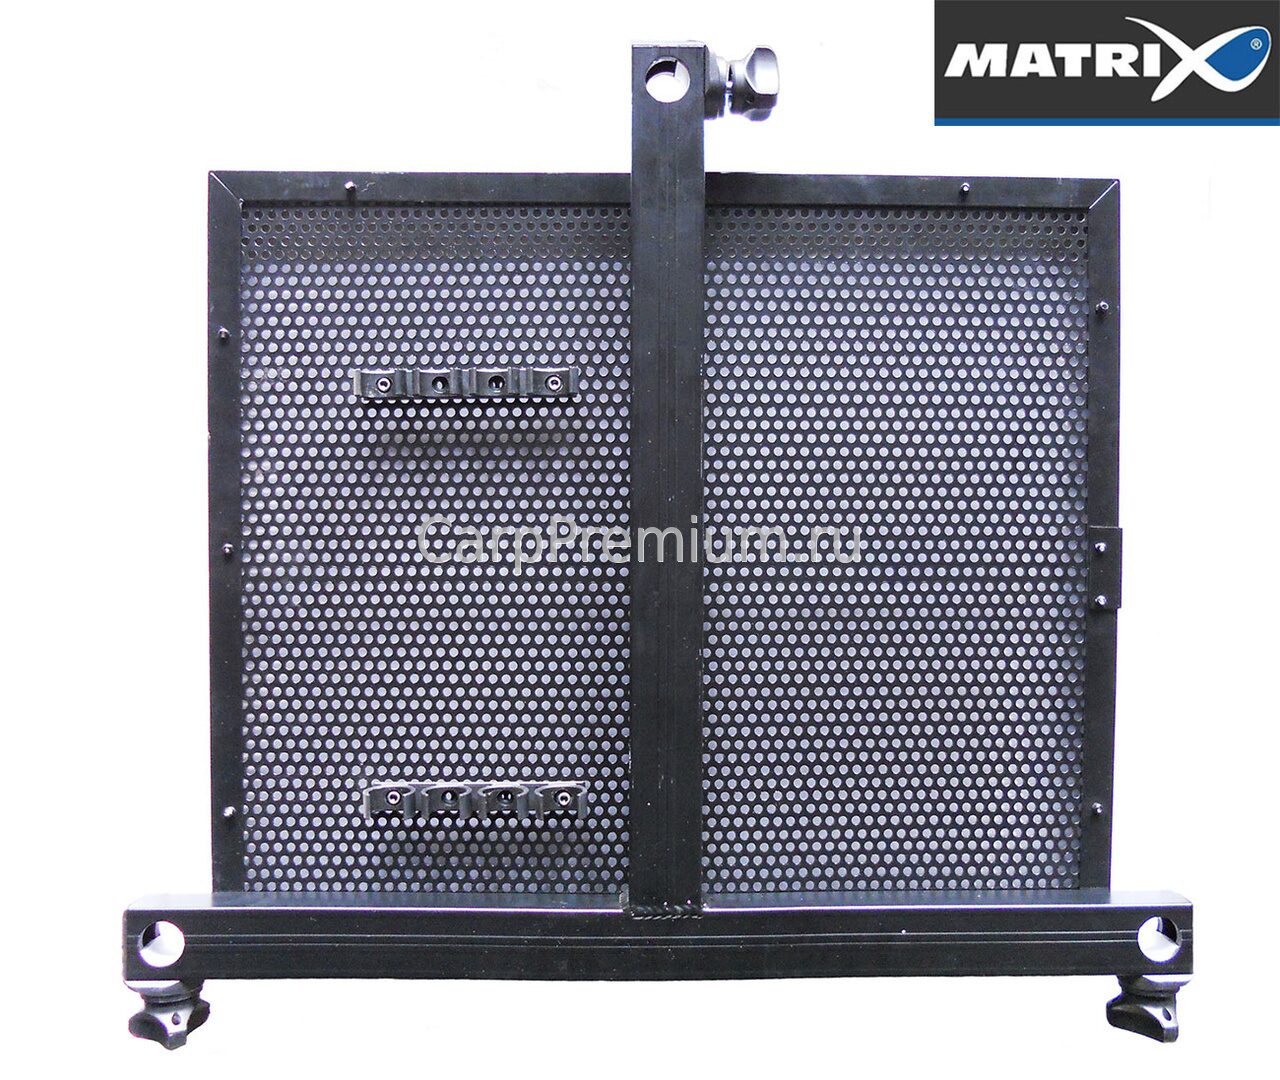 Matrix 3d-r Standard Side Tray small. 40x40cm